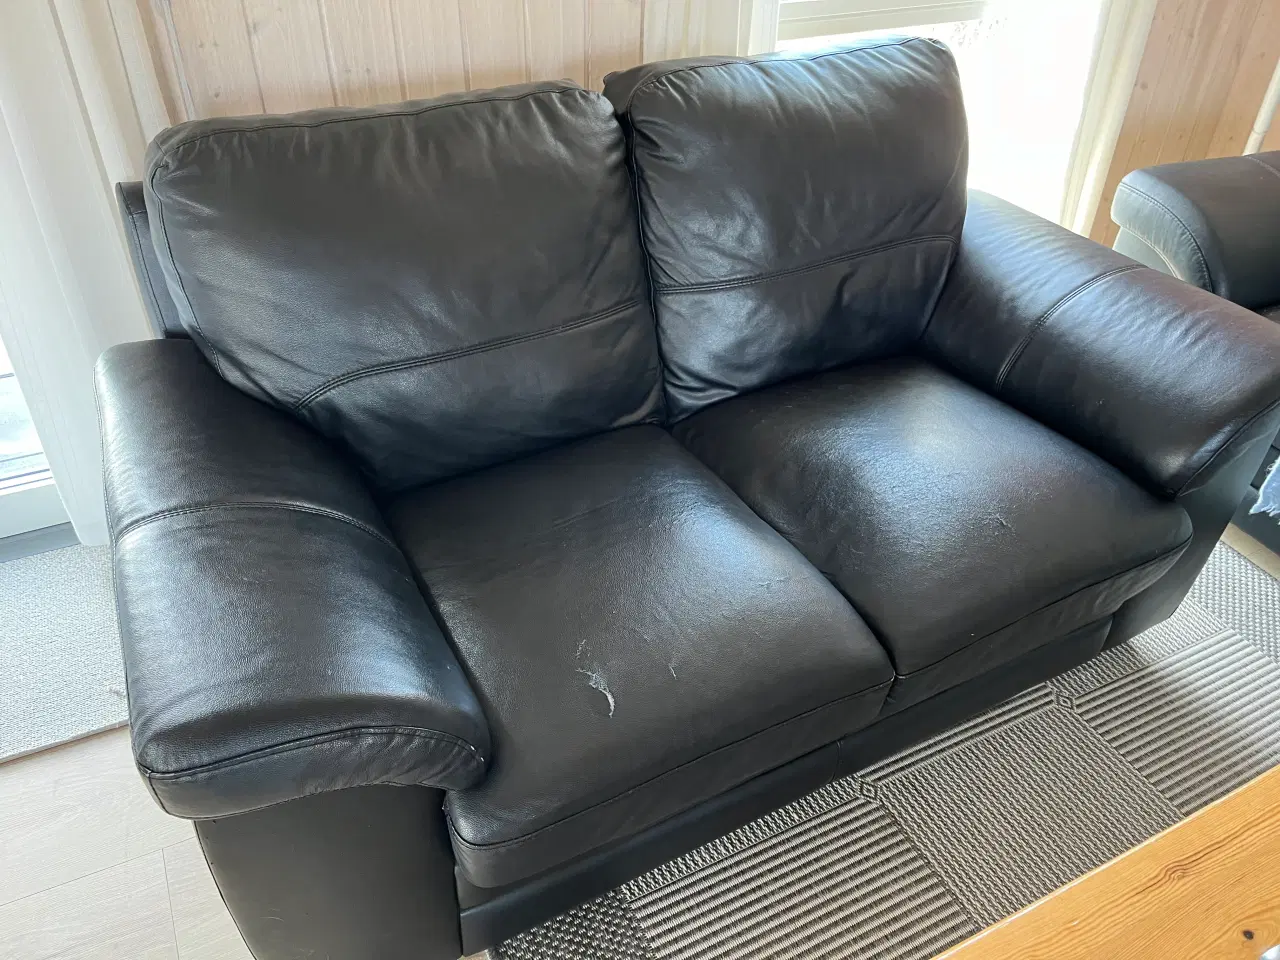 Billede 4 - Komfortable og gratis sofaer søger nyt hjem